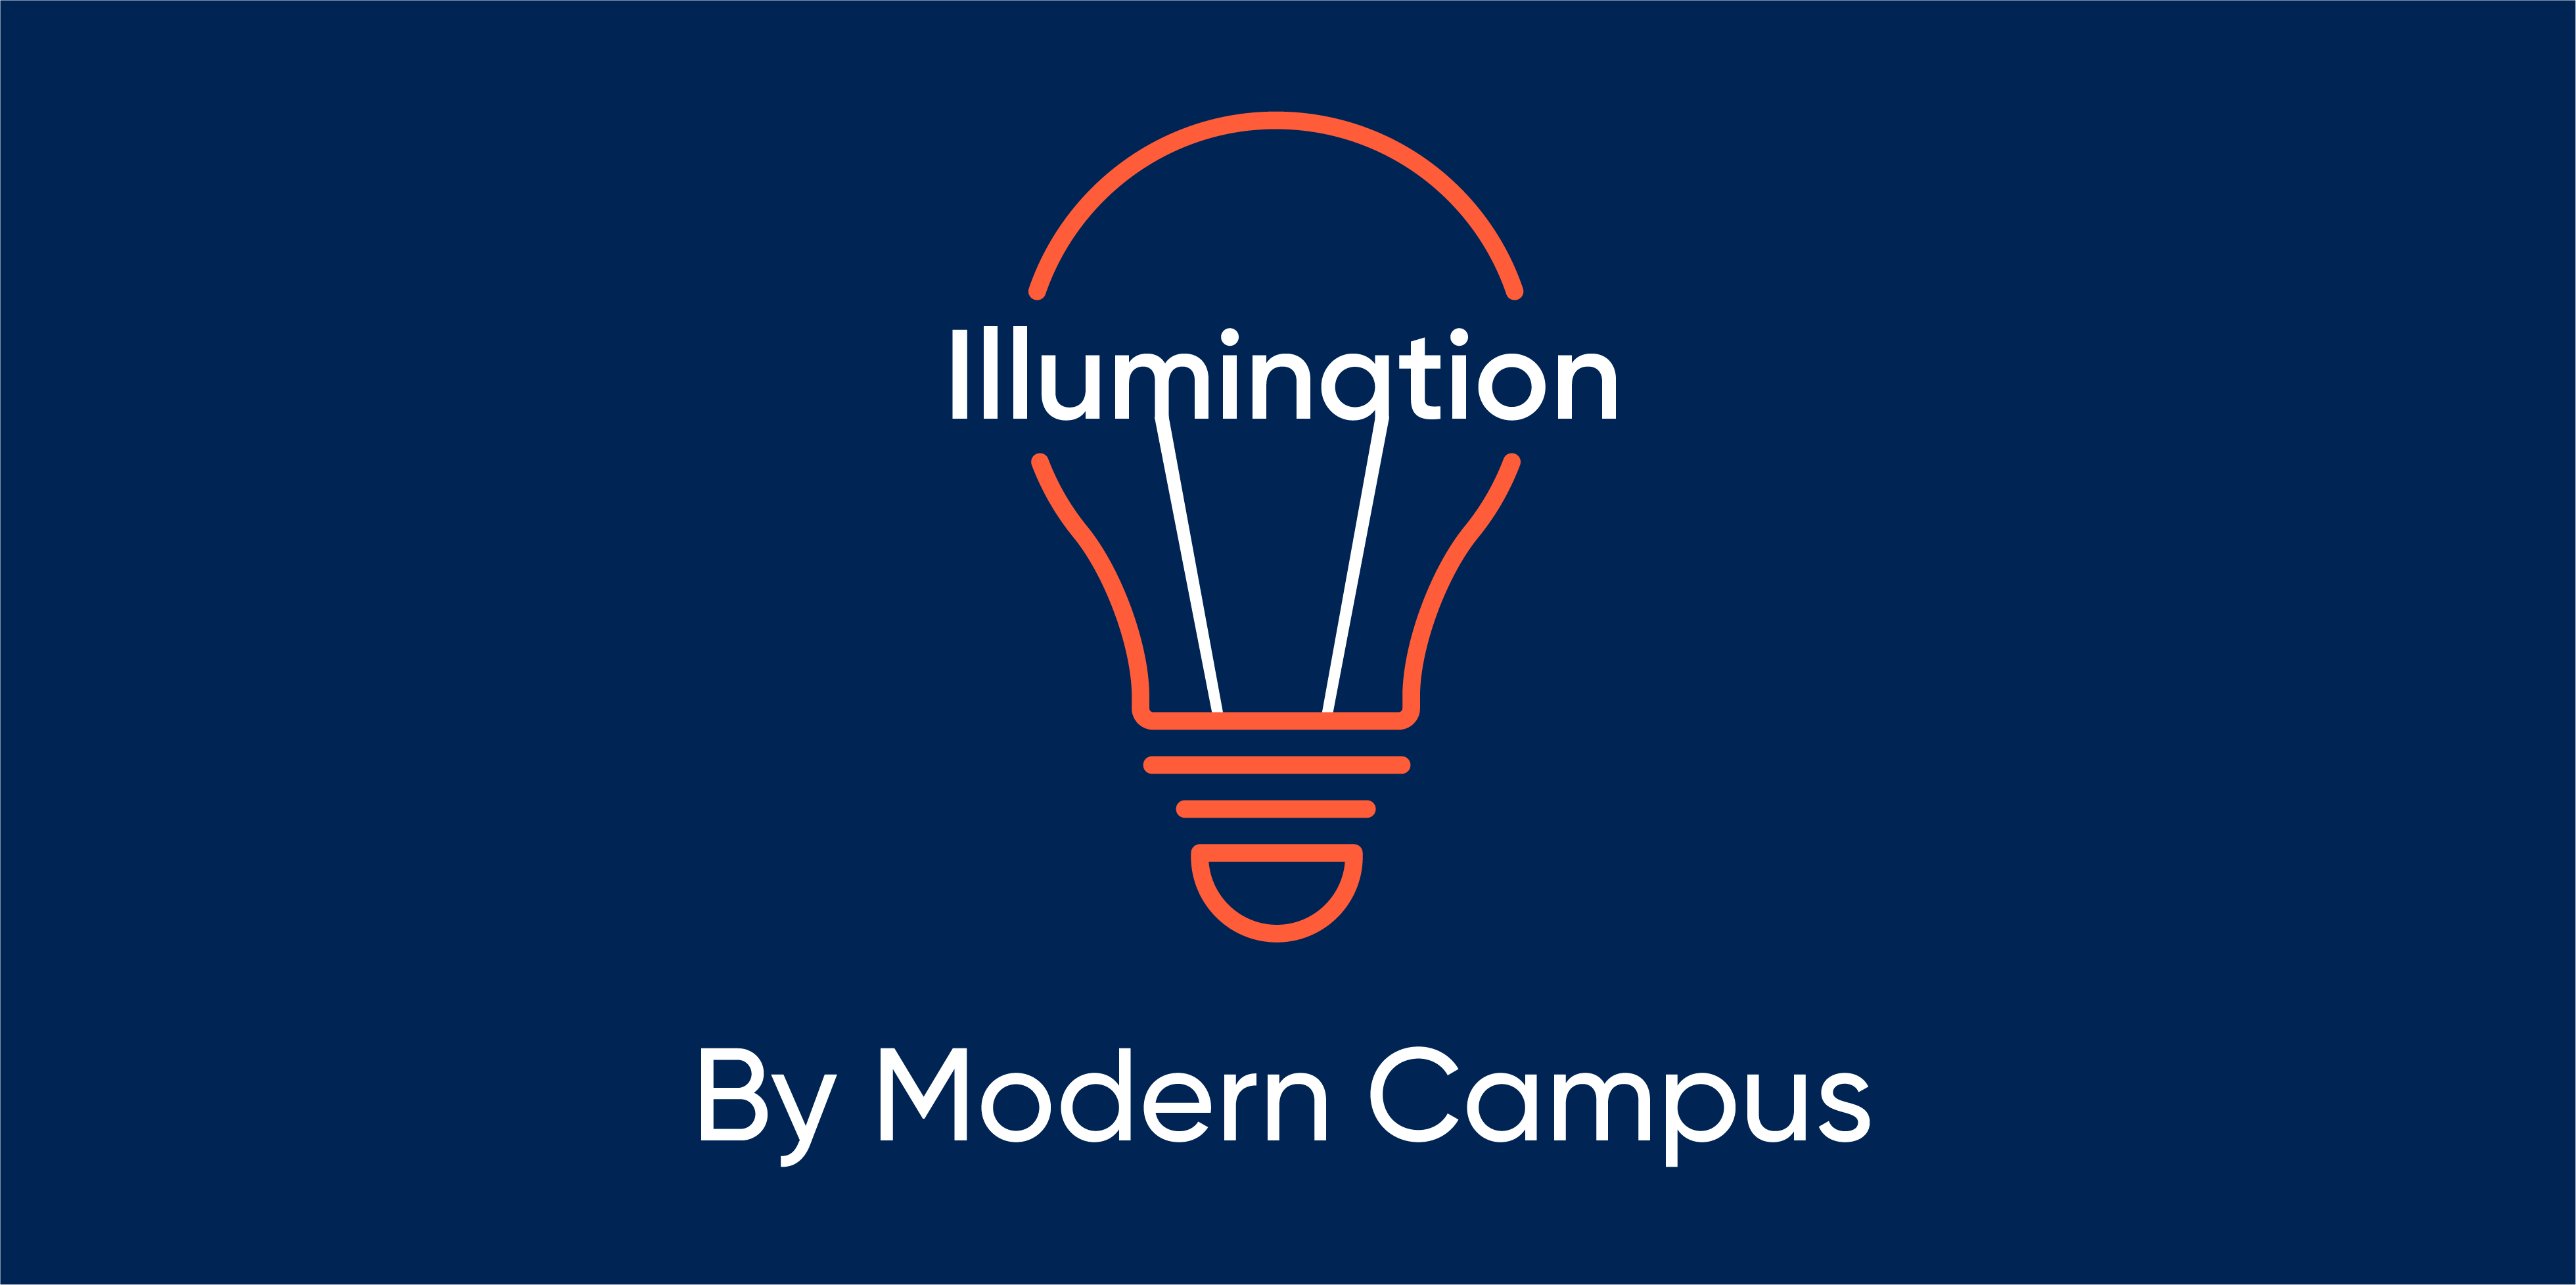 Episode 148: Illumination by Modern Campus